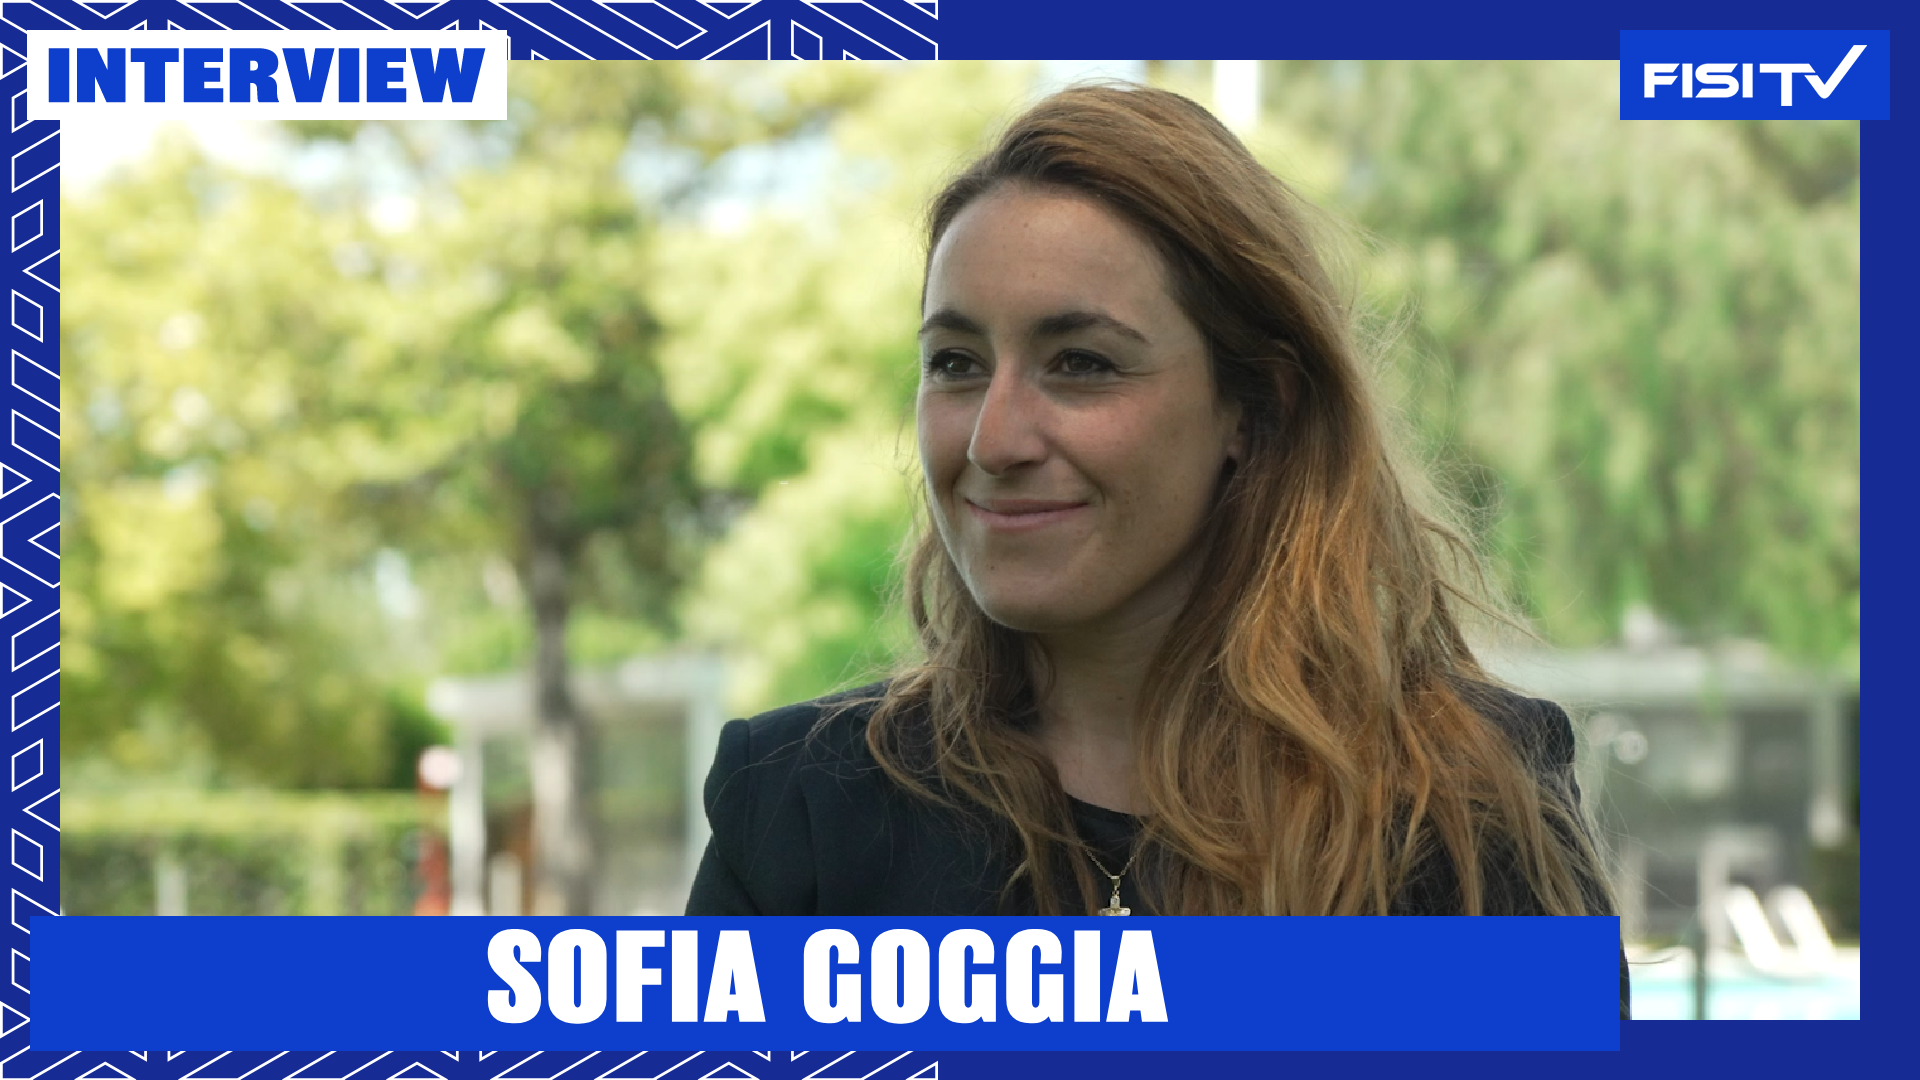 Sofia Goggia | “L’obiettivo è quello di sciare il più forte possibile” | FISI TV